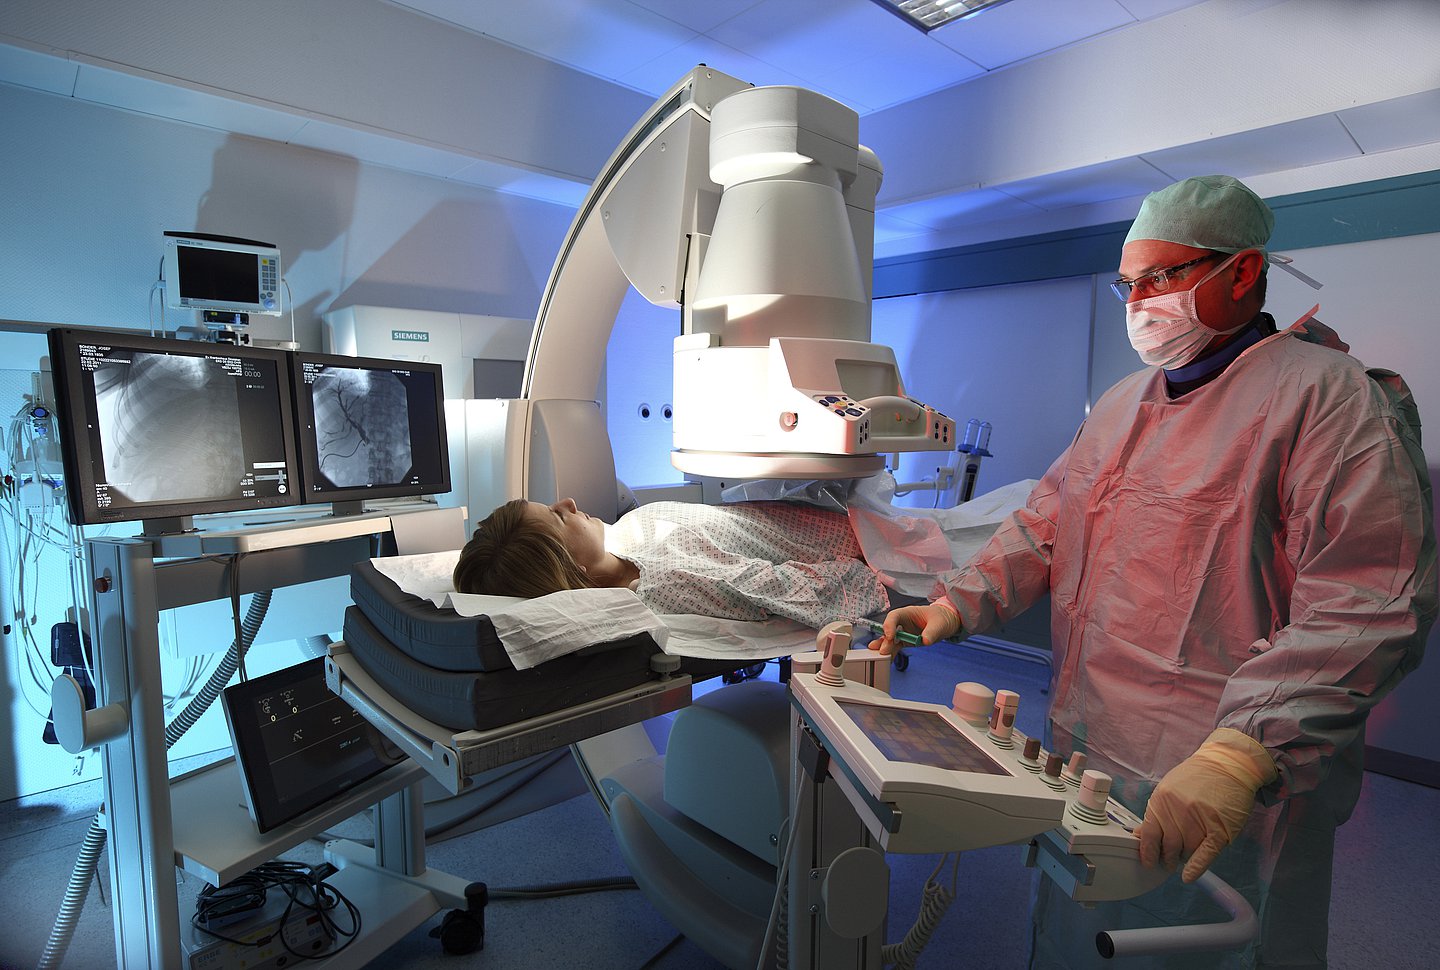 Foto: Ein Arzt führt eine radiologische Untersuchung bei einer Patient durch.